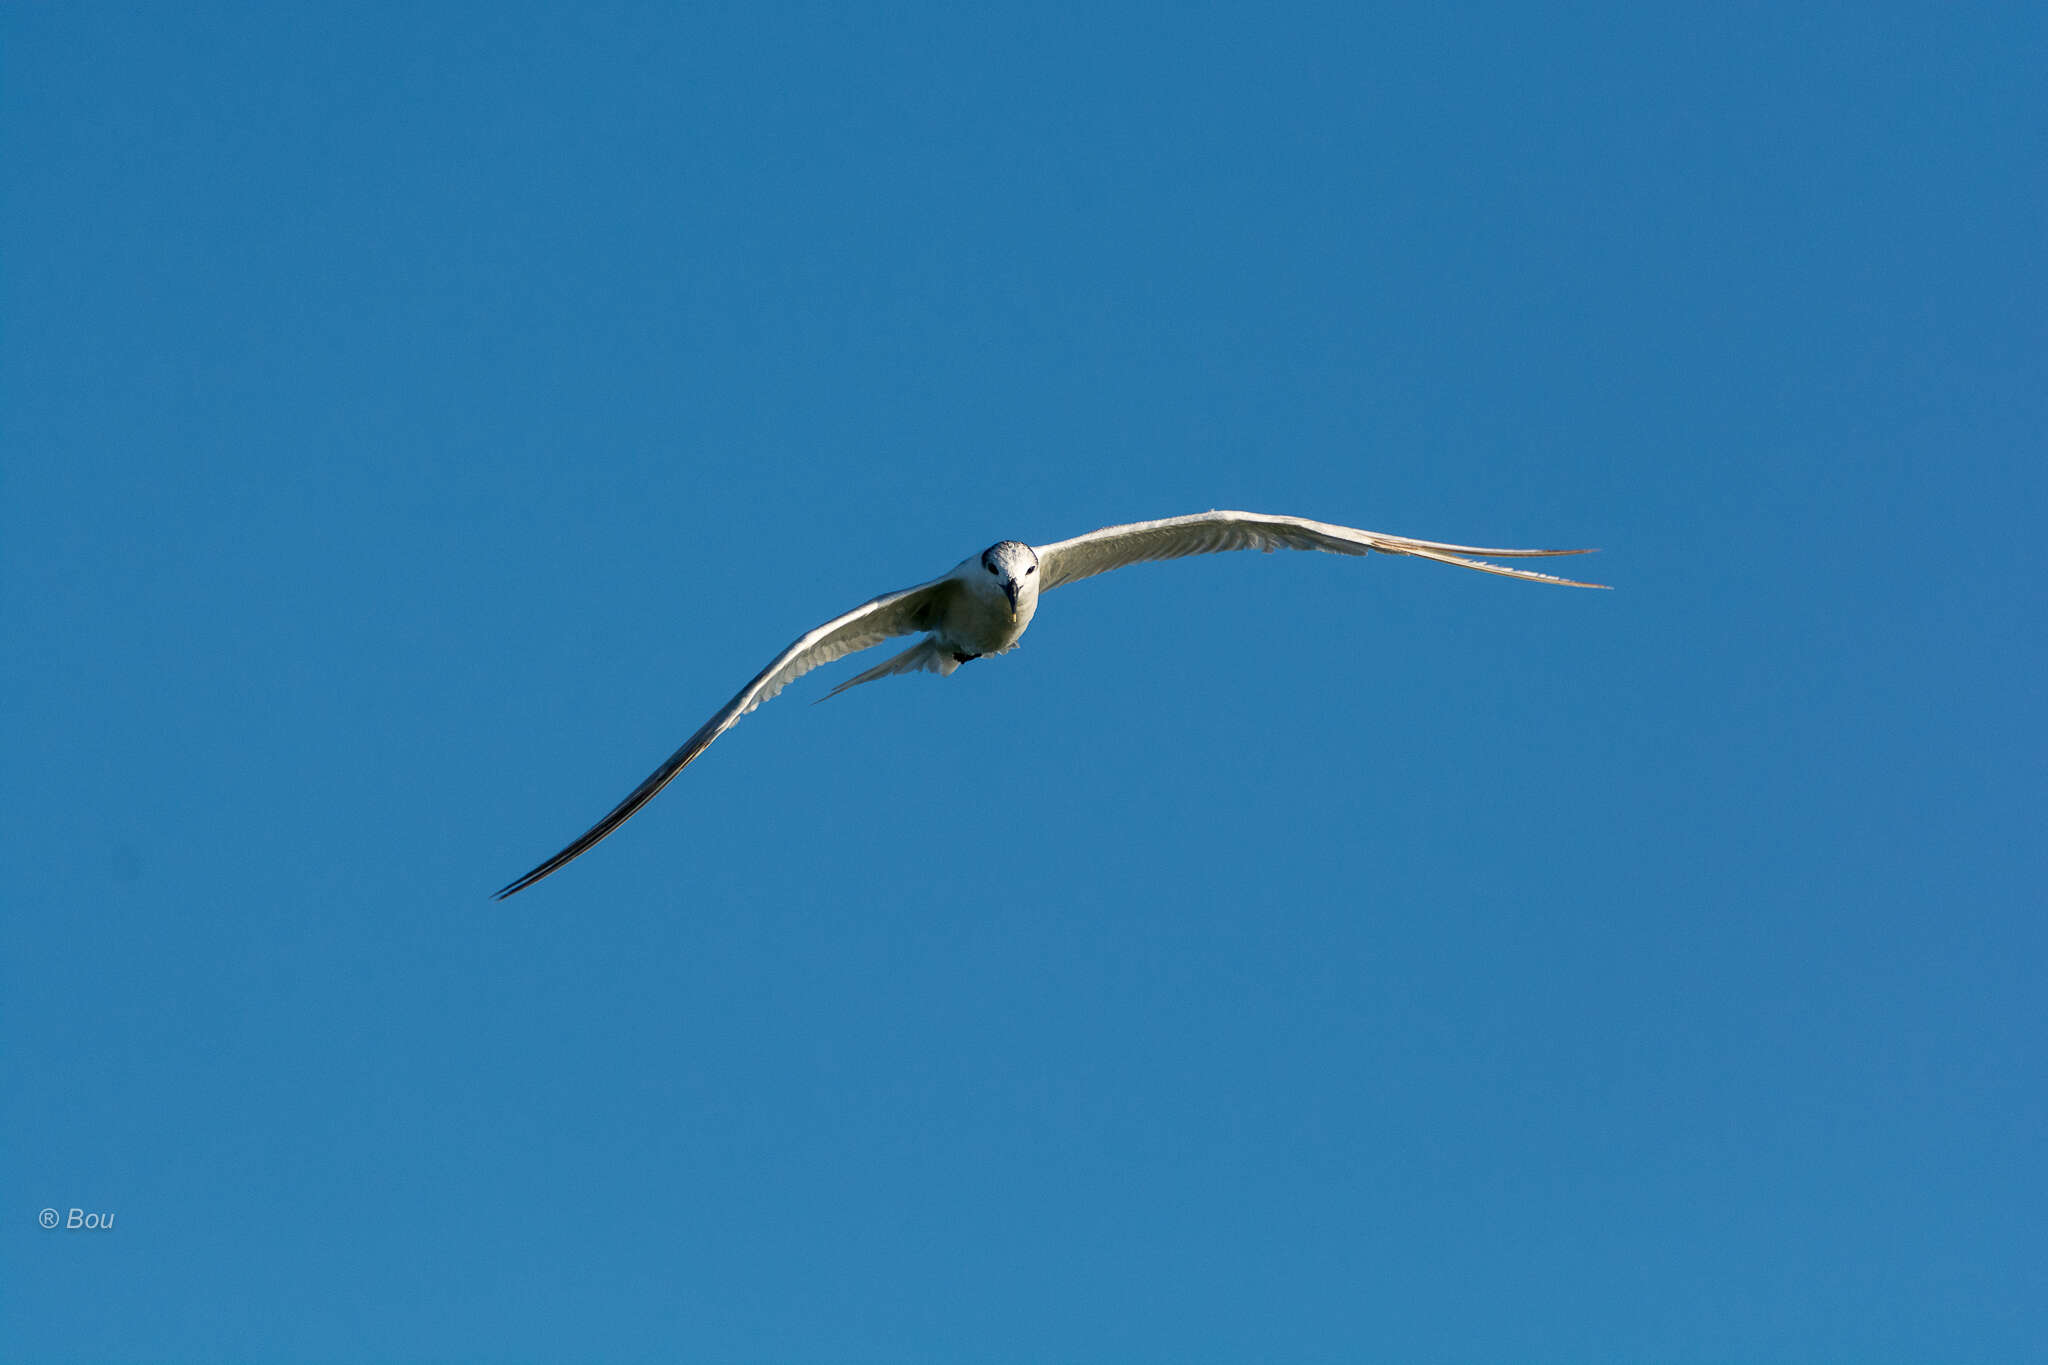 Image of Sandwich Tern